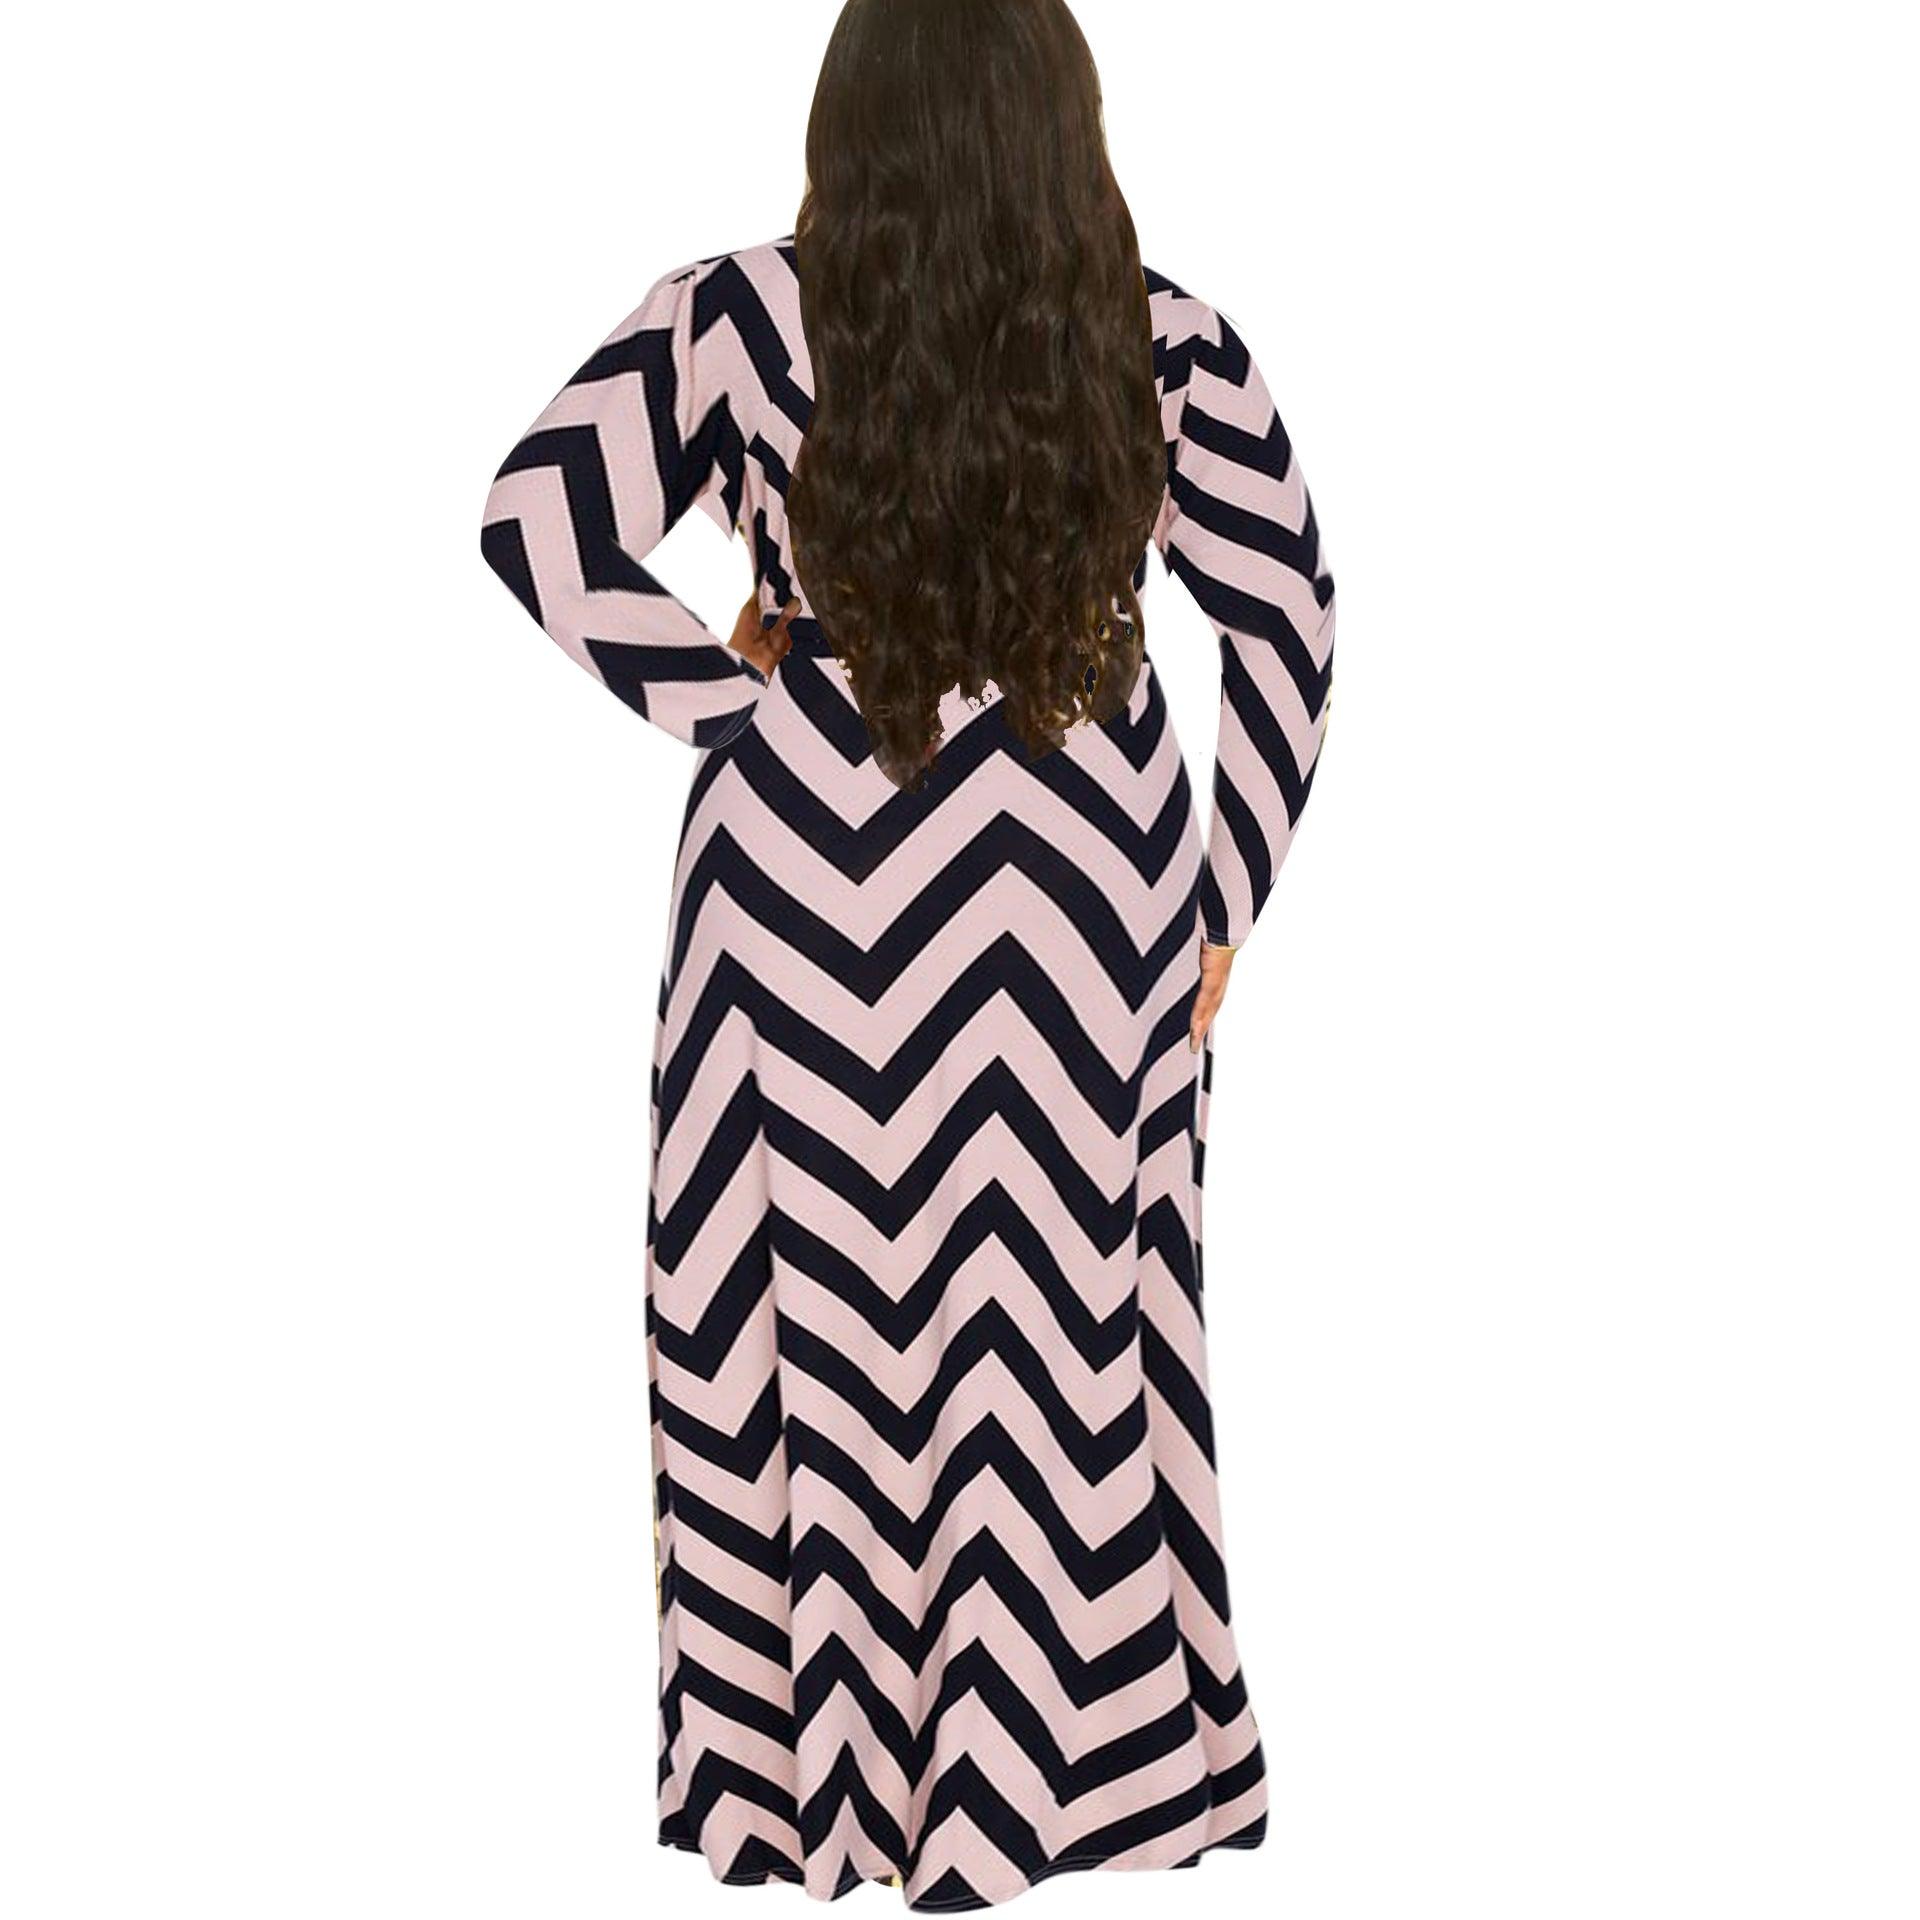 Striped dress long sleeve Fine women's clothing